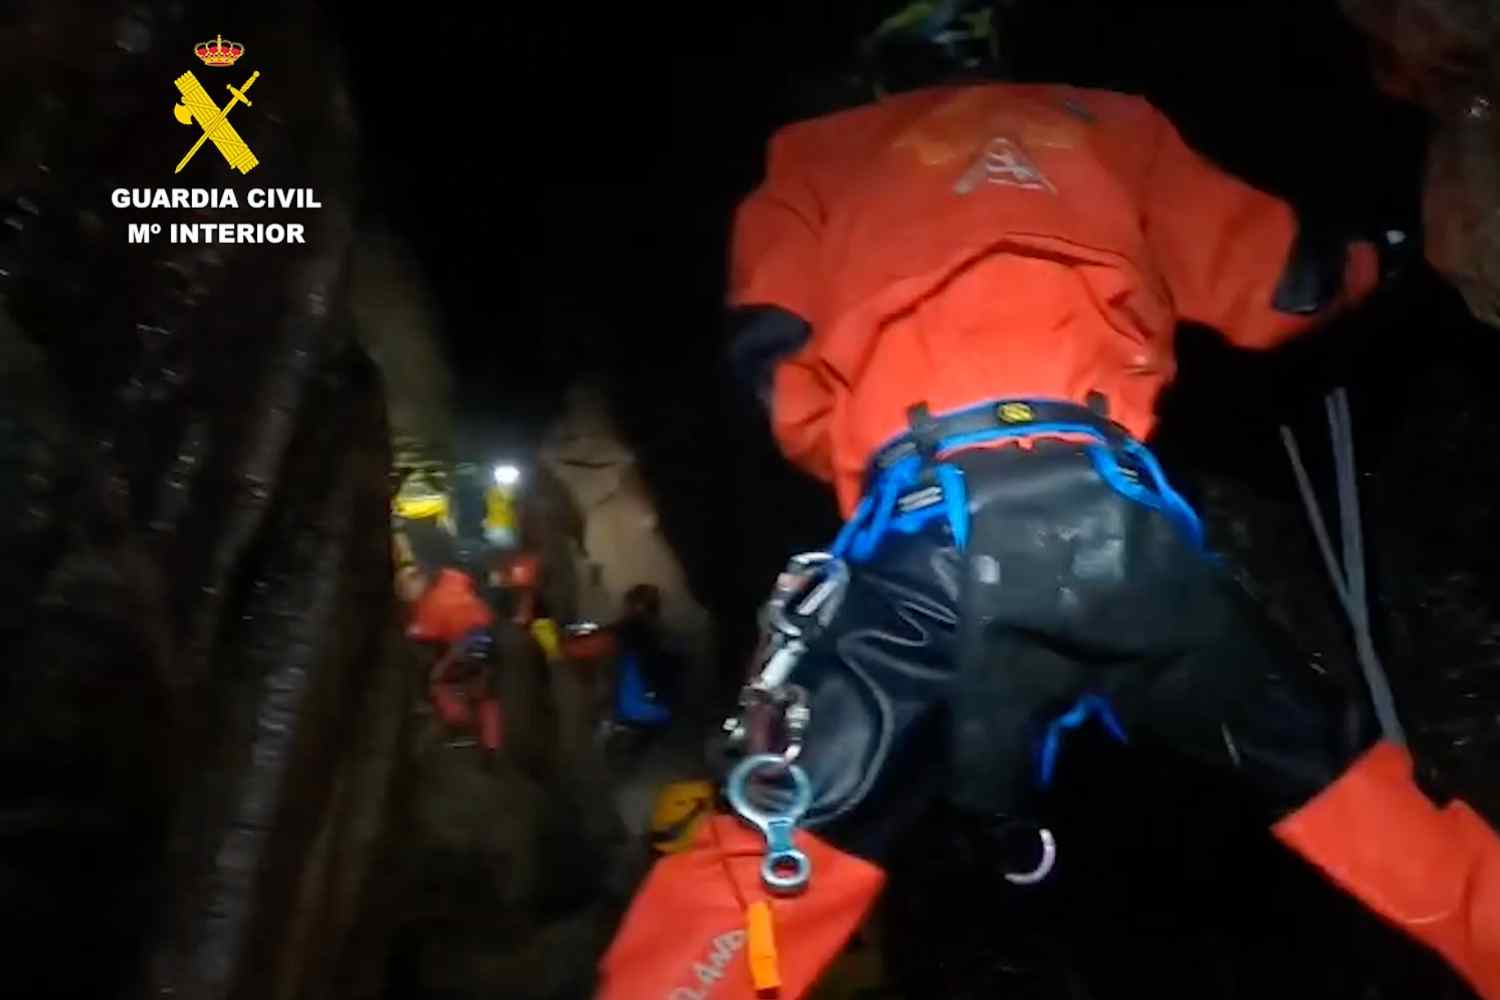 La Guardia Civil realiza prácticas de rescate en el interior de la cueva de Valporquero (León)